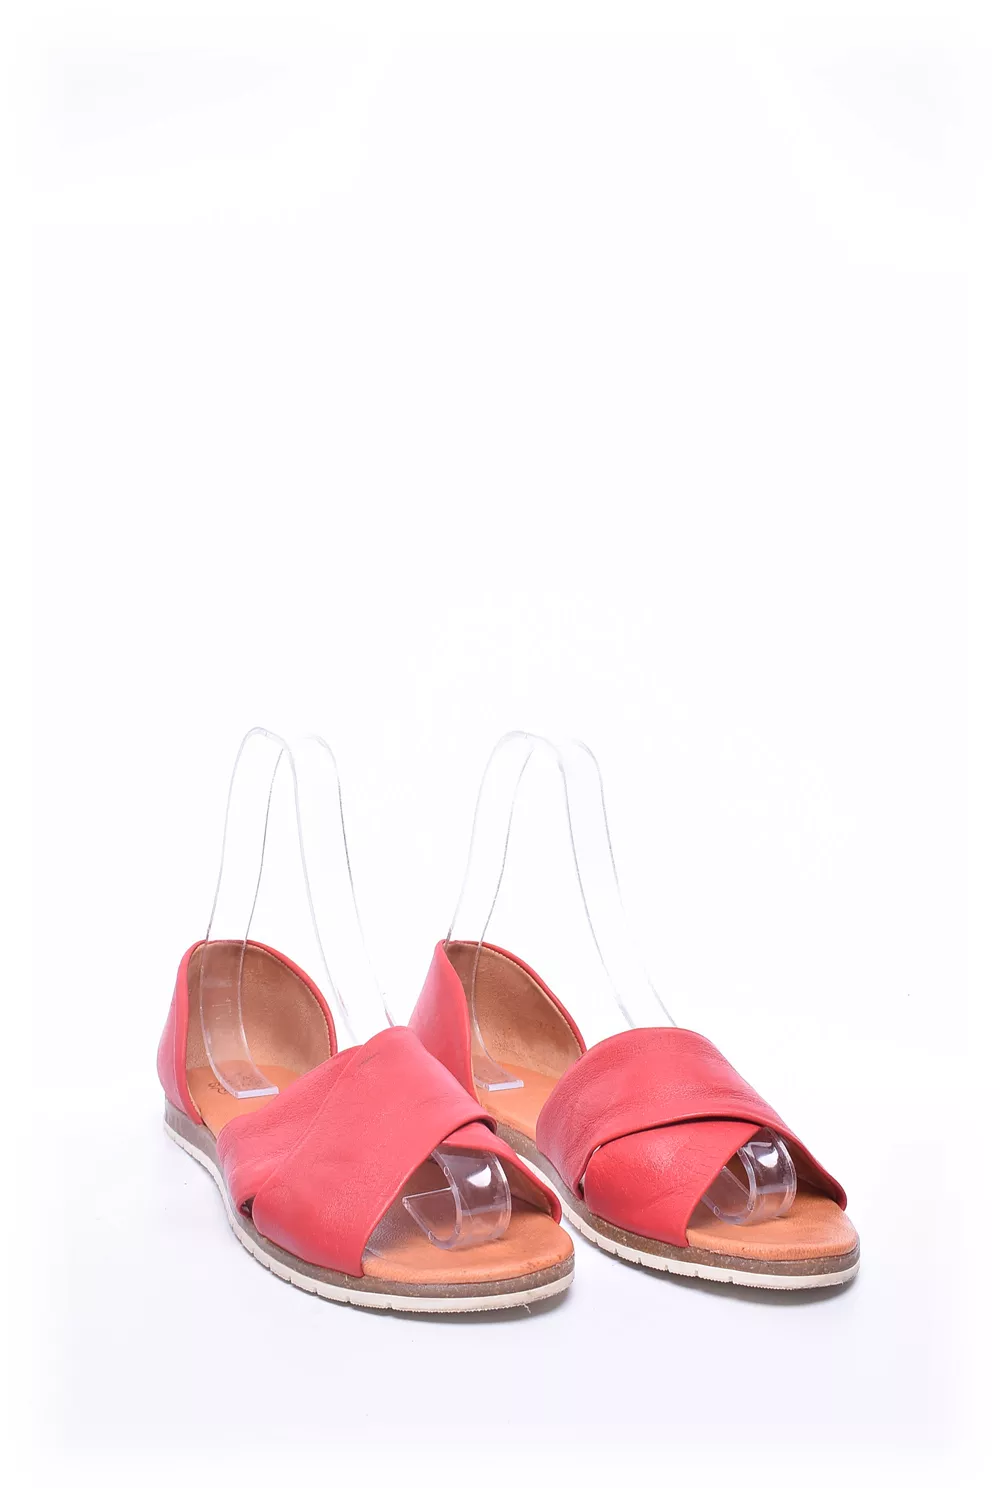 Sandale dama [3]